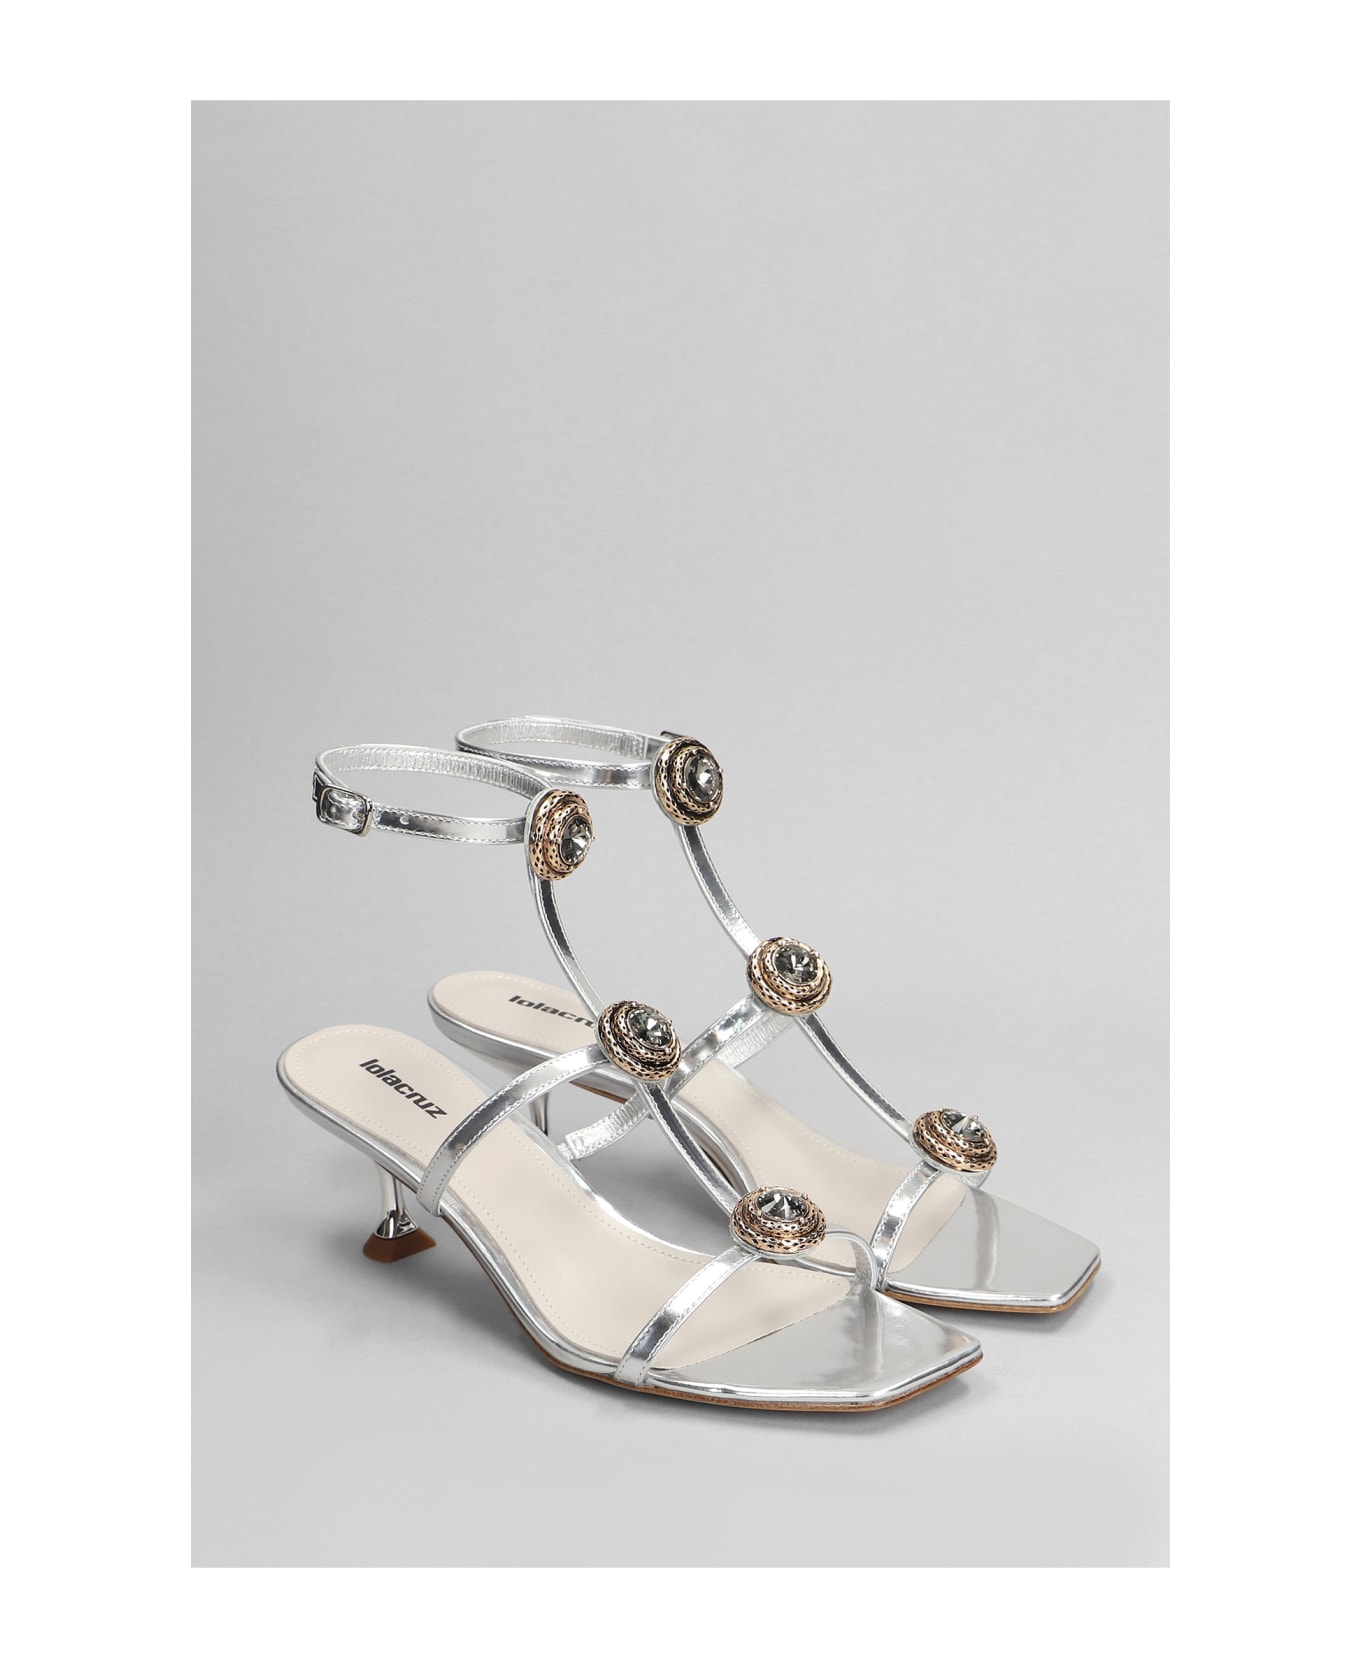 Lola Cruz Lya 95 Sandals In Silver Leather - silver サンダル